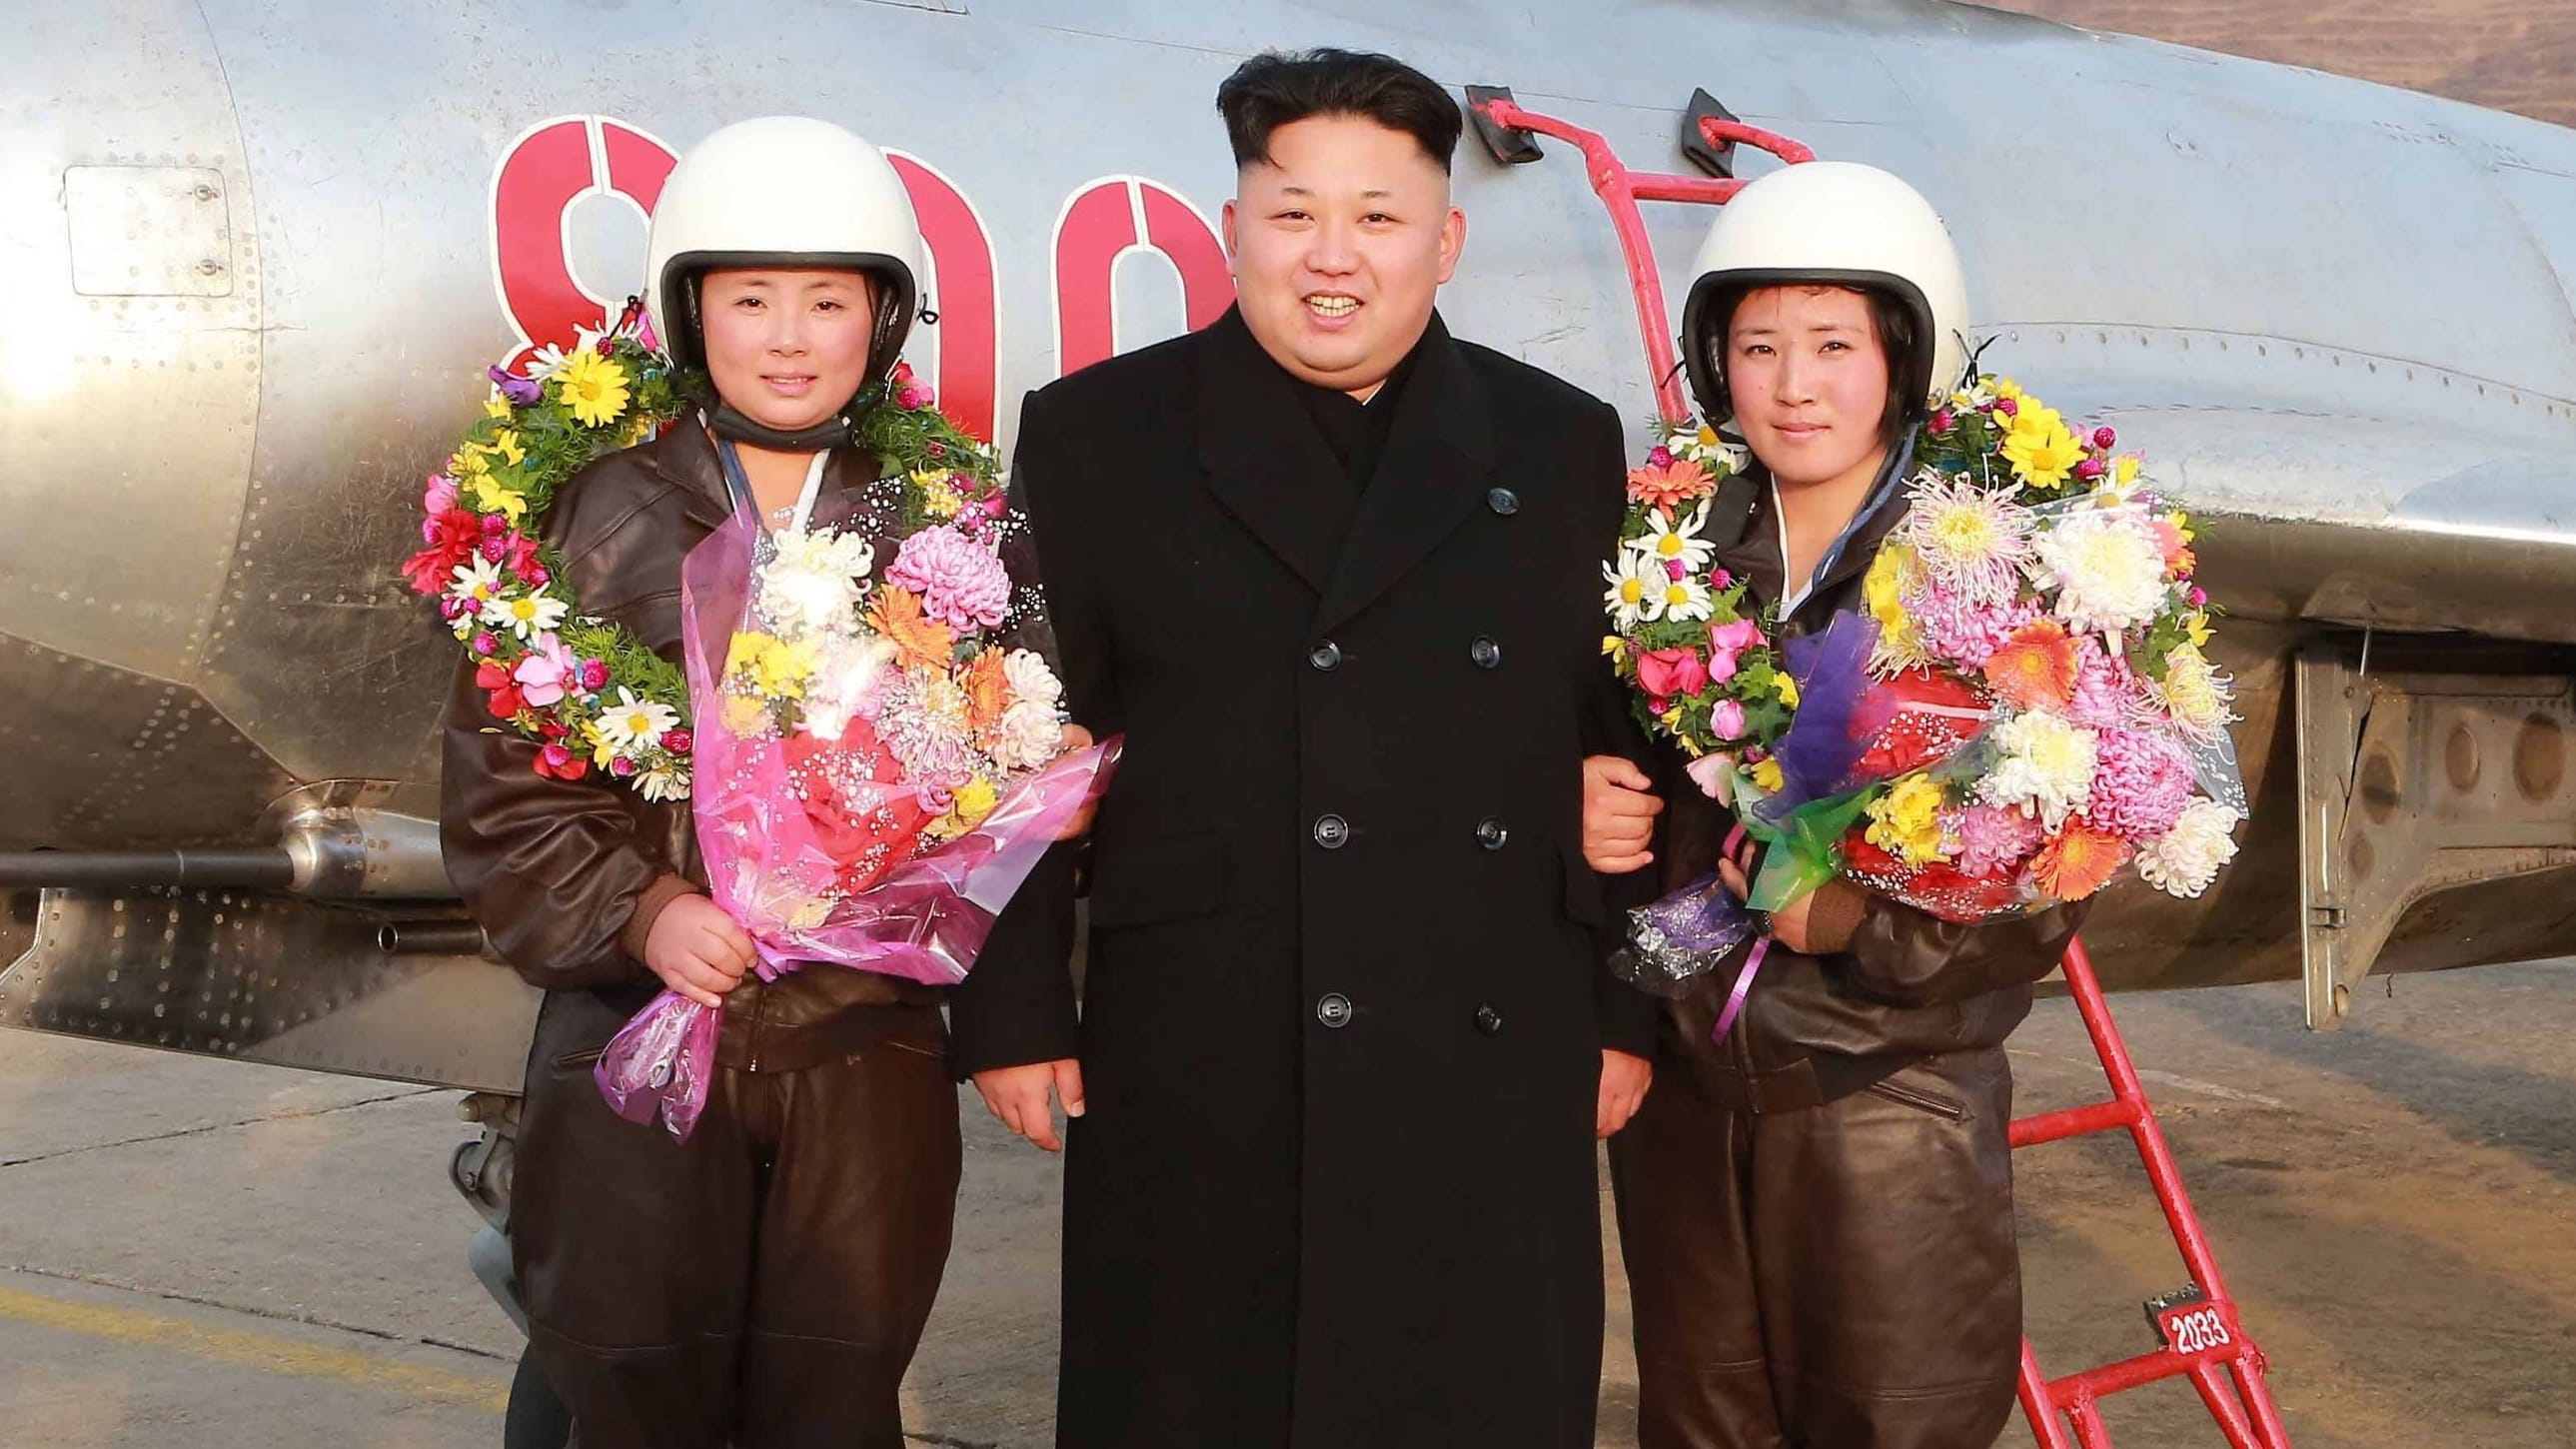 Nordkorea: Kim Jong-un soll angeblich Harem aus Schülerinnen rekrutieren